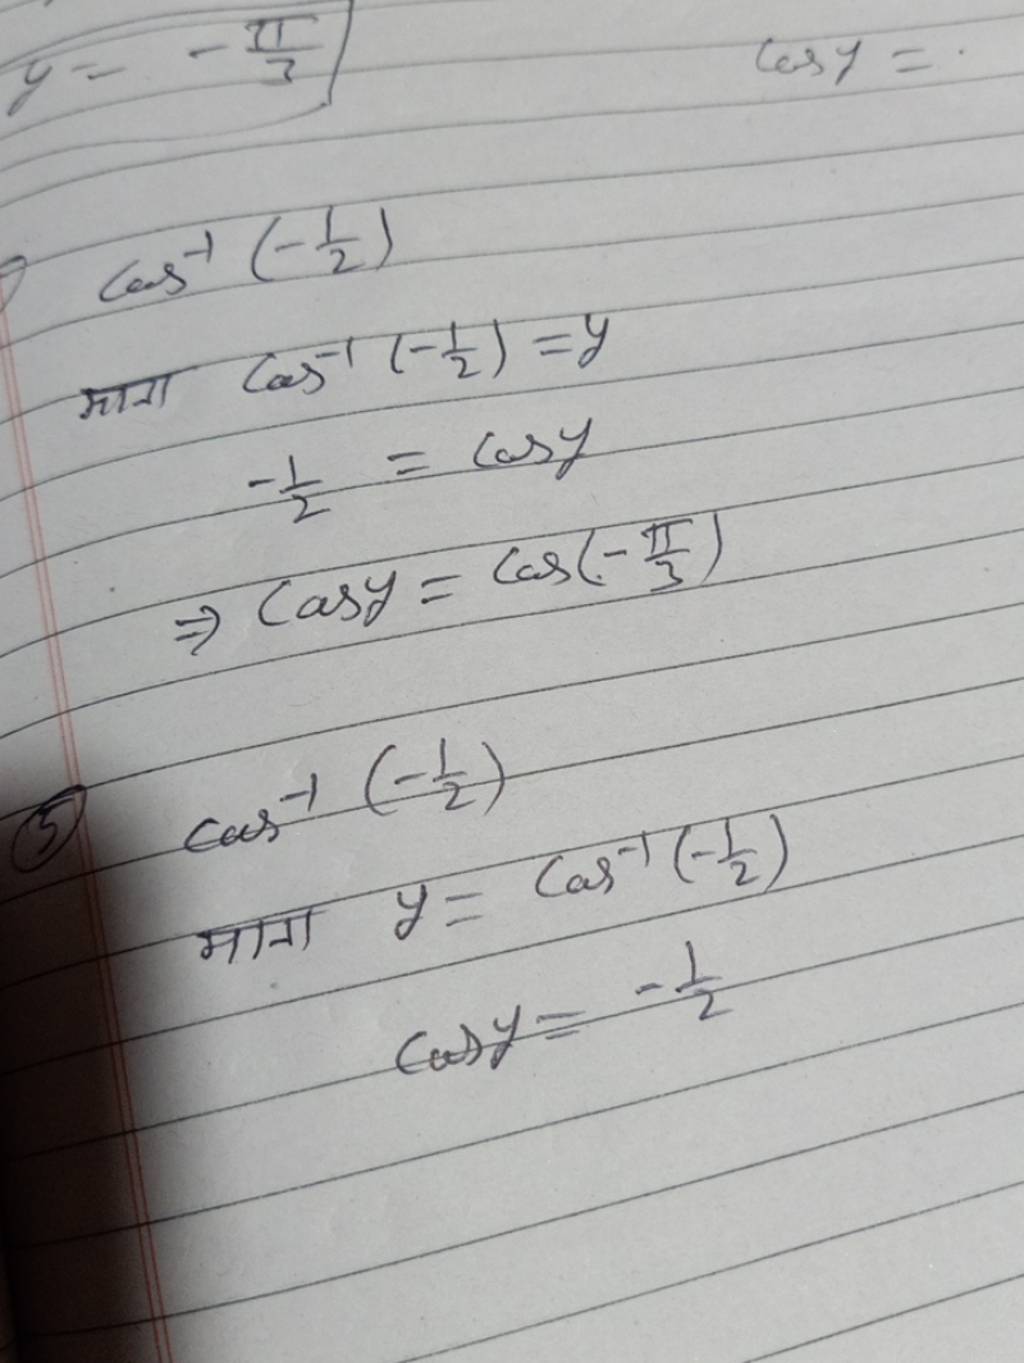  माना cos−1(−21​)=y−21​=cosy⇒cosy=cos(−3π​)​
(5) cos−1(−21​)
 माना y=c